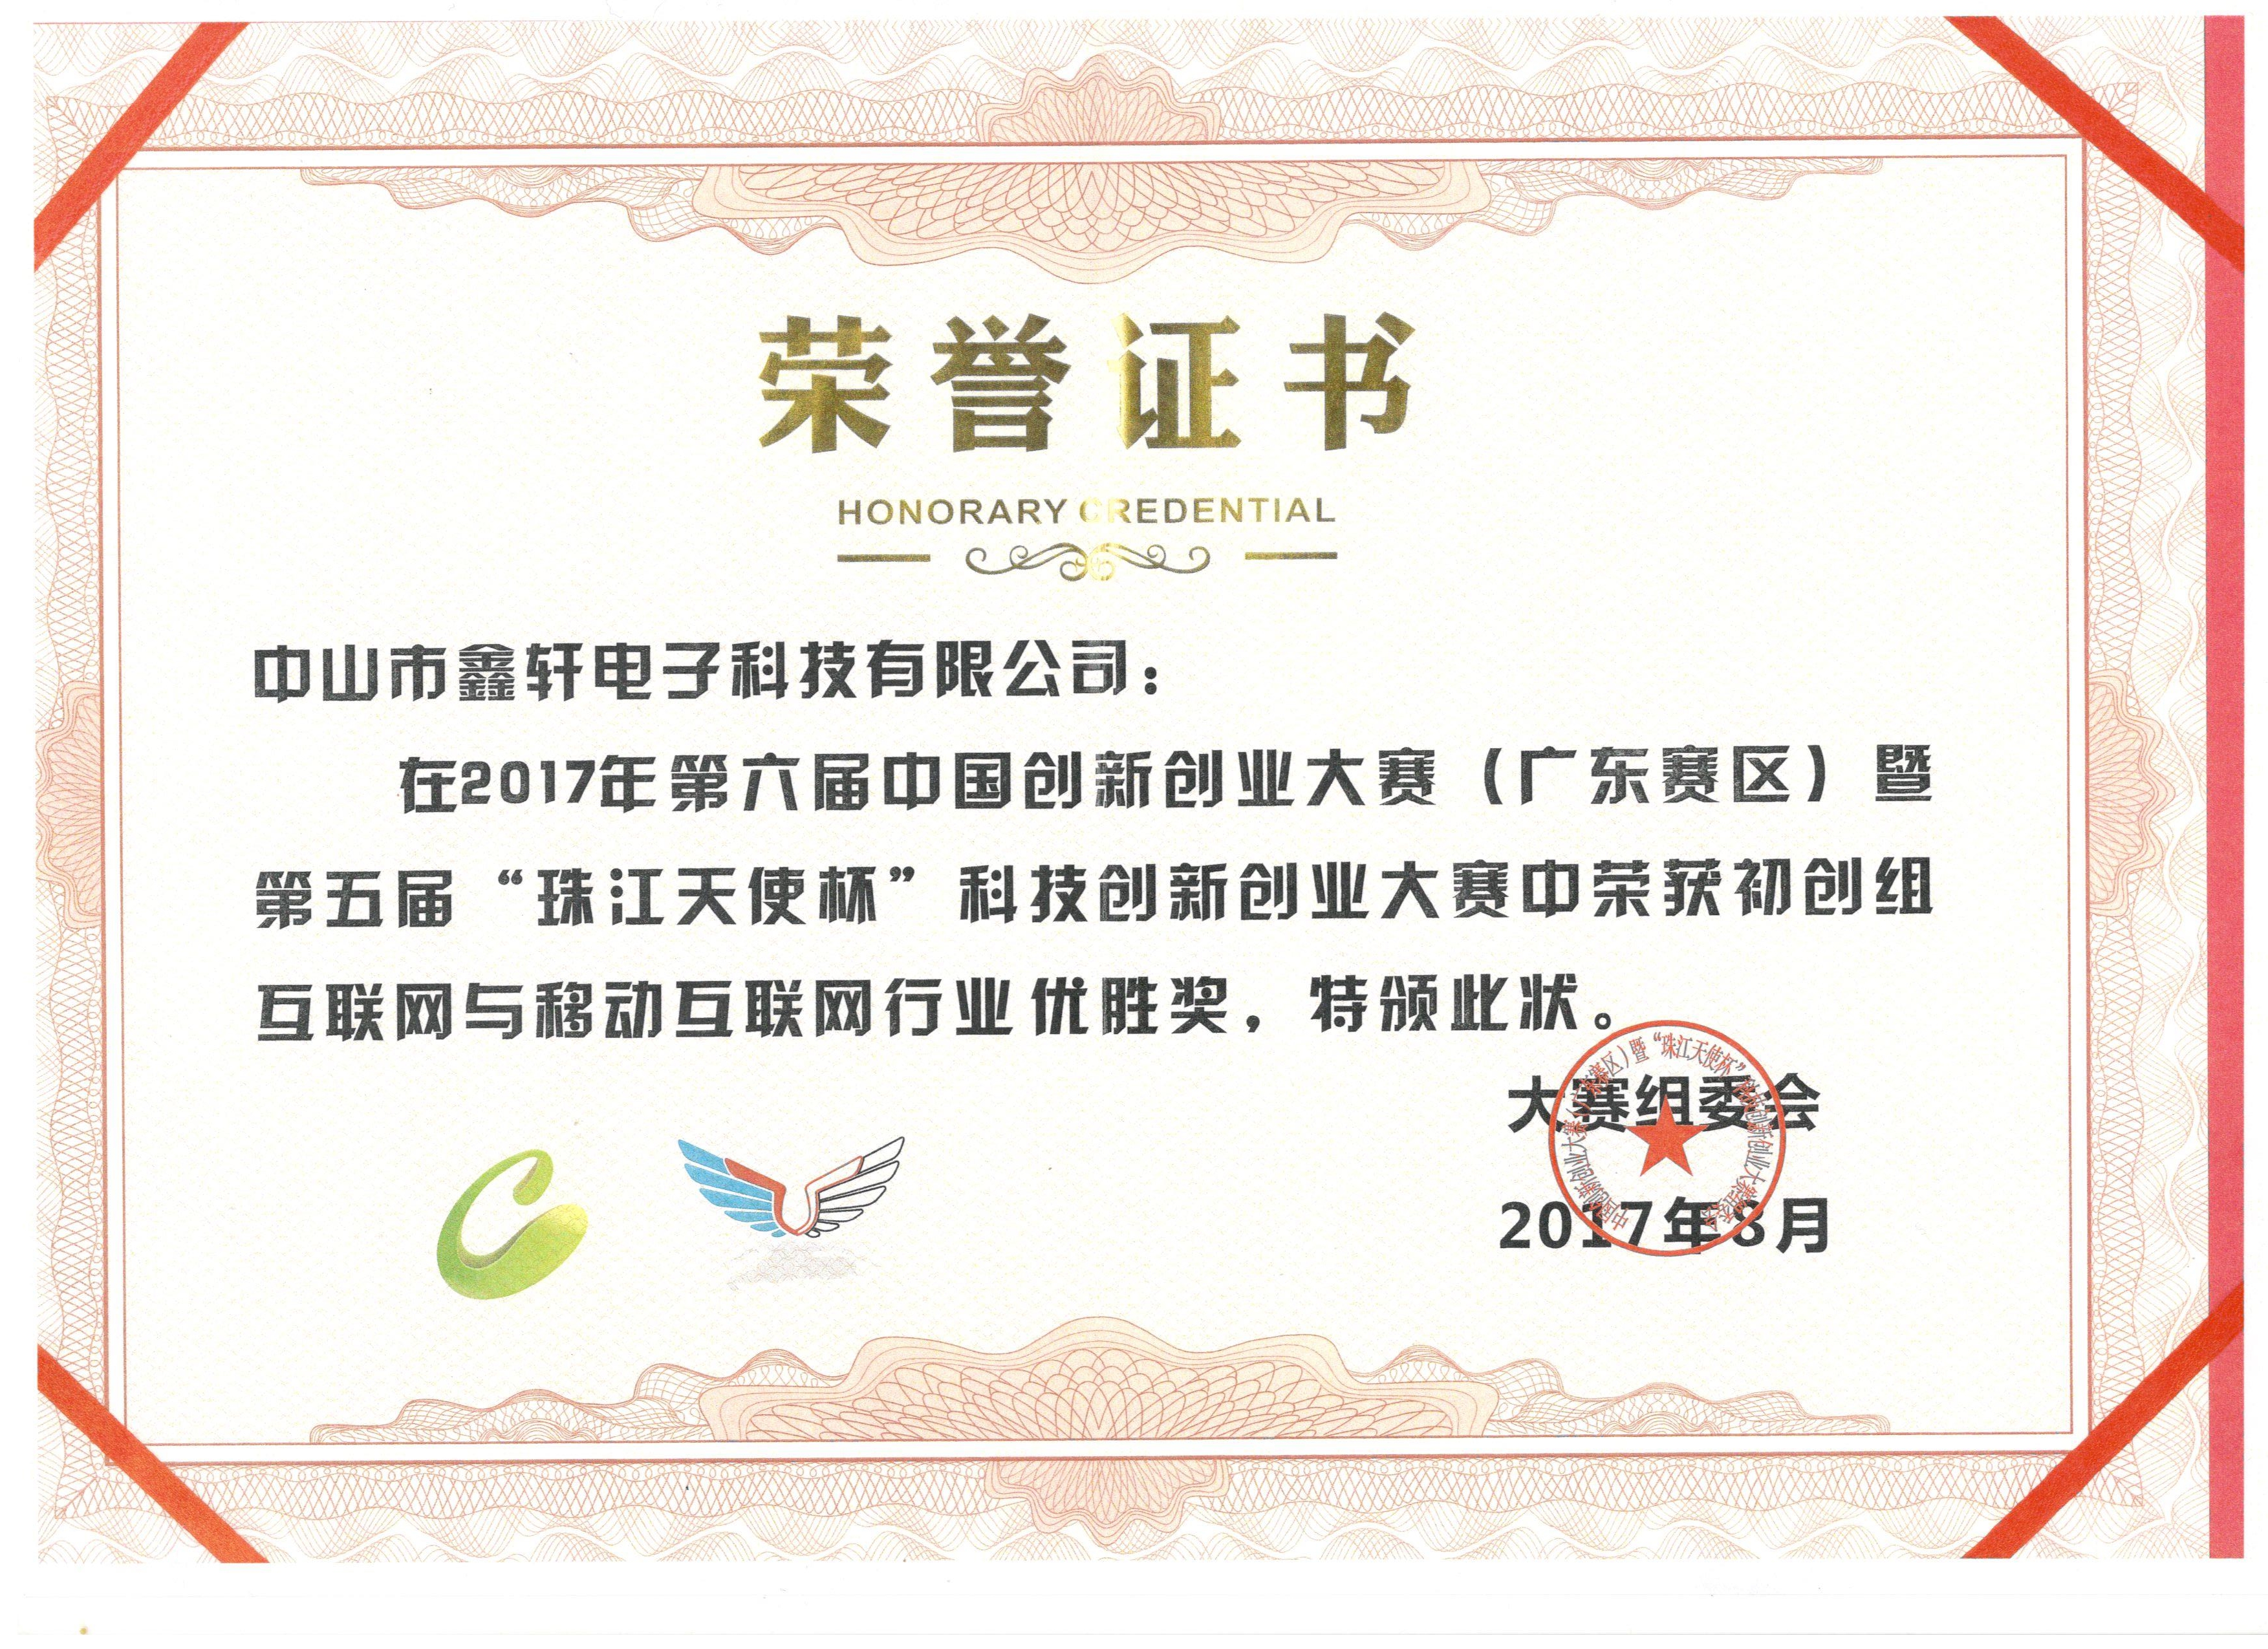 11.2017年中国创新创业大赛获奖证书 (2).jpg